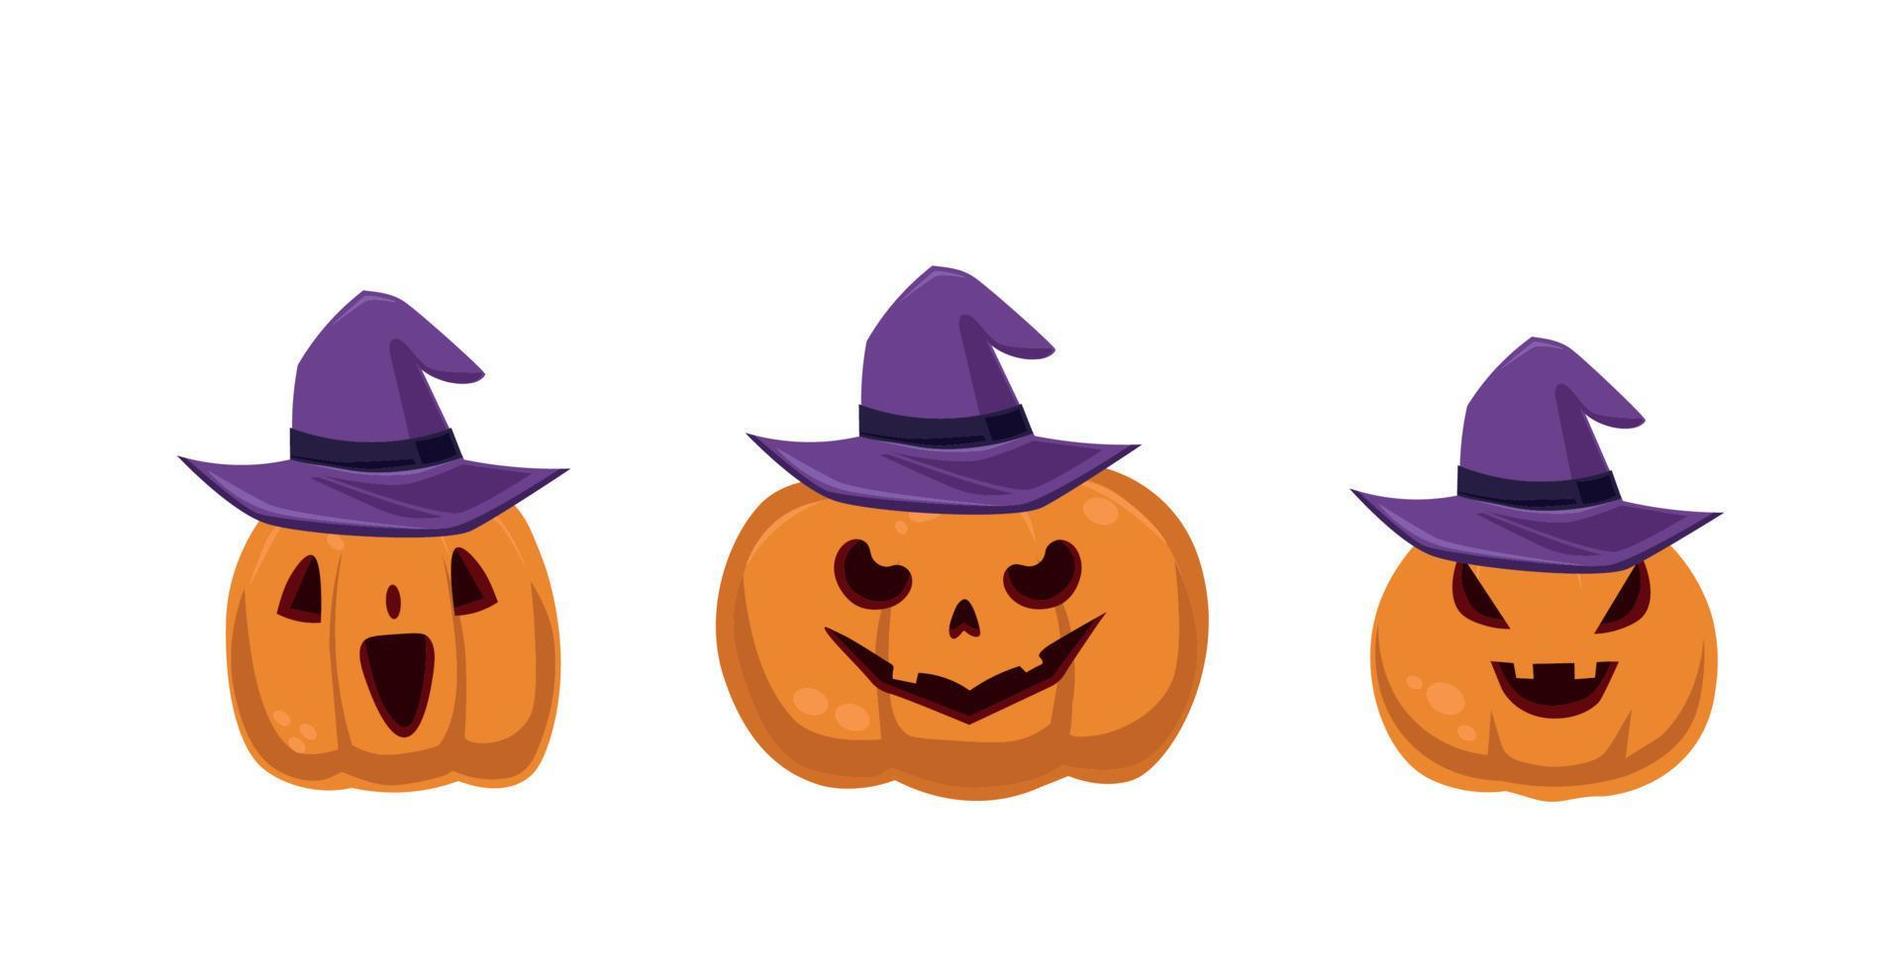 feestelijke set 3 st. Halloween-pompoenen in hoed die op witte achtergrond wordt geïsoleerd - vector